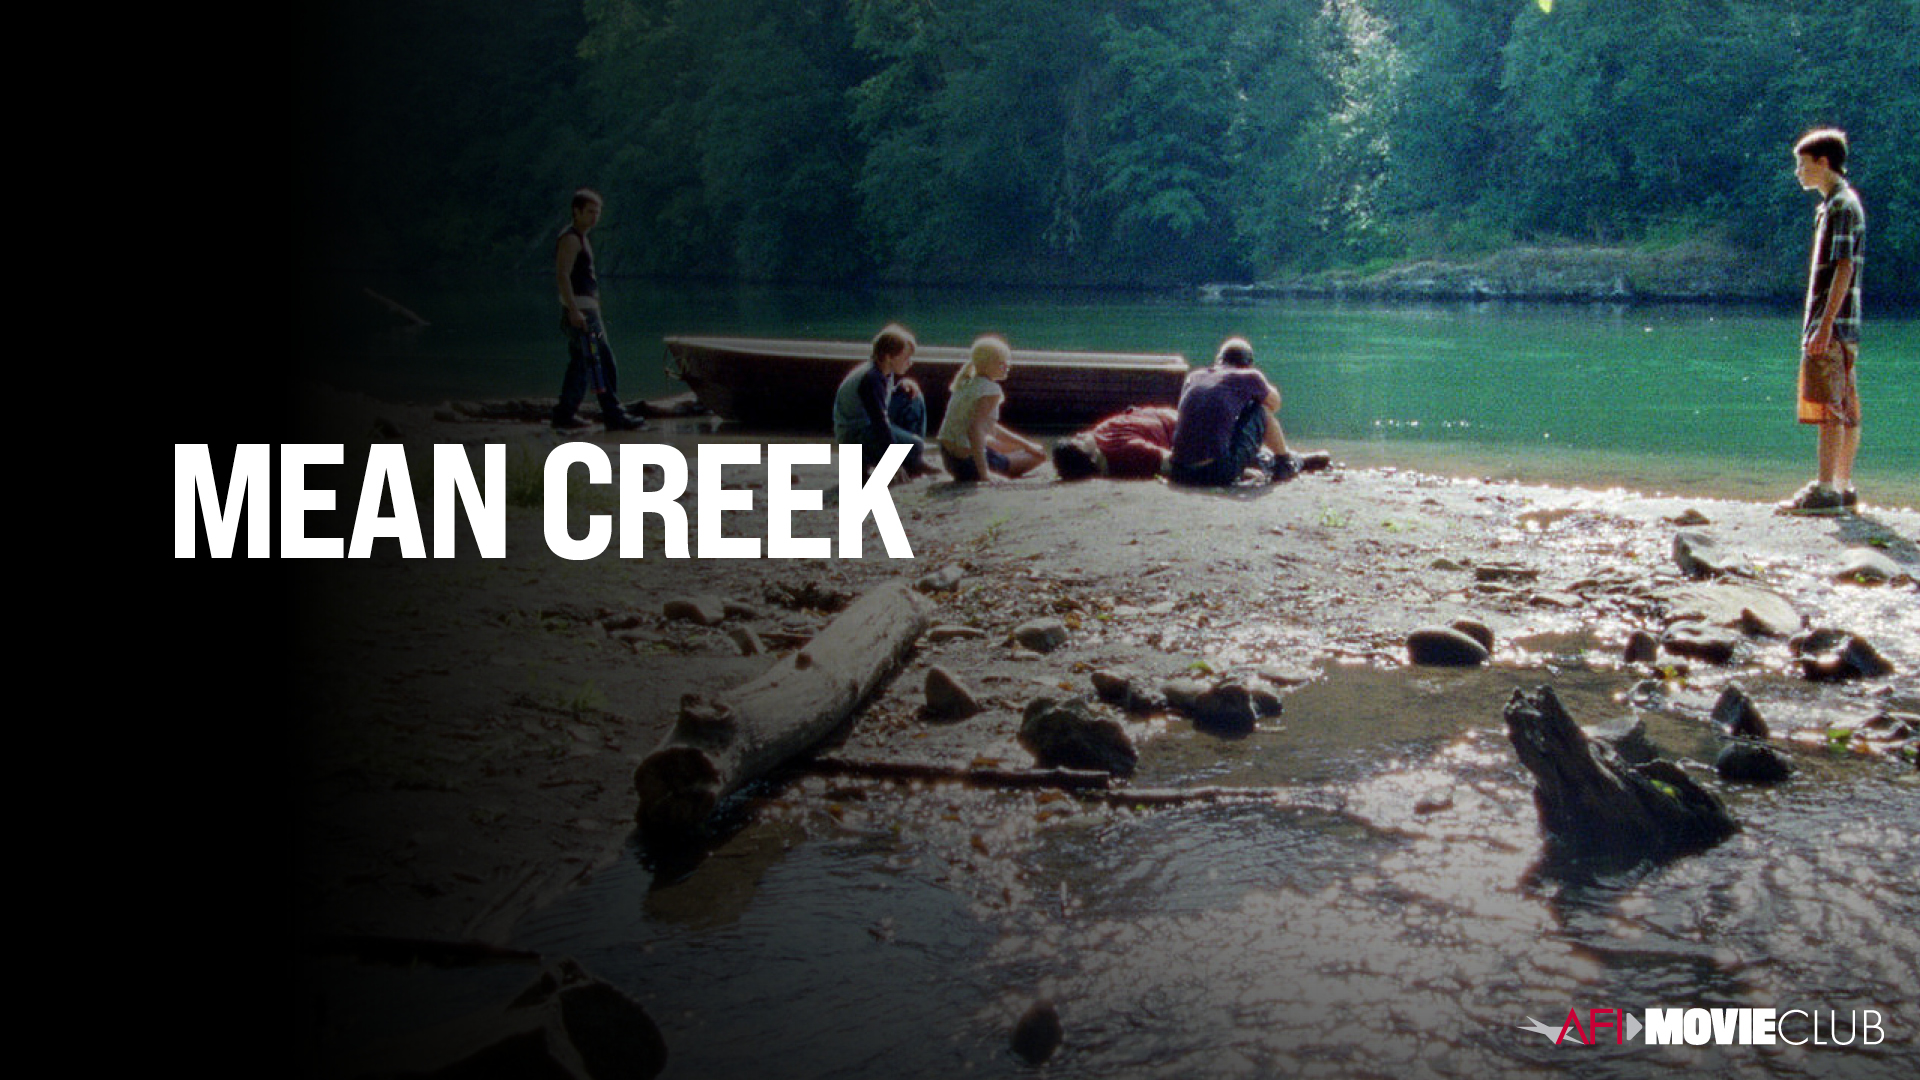 Mean Creek Film Still